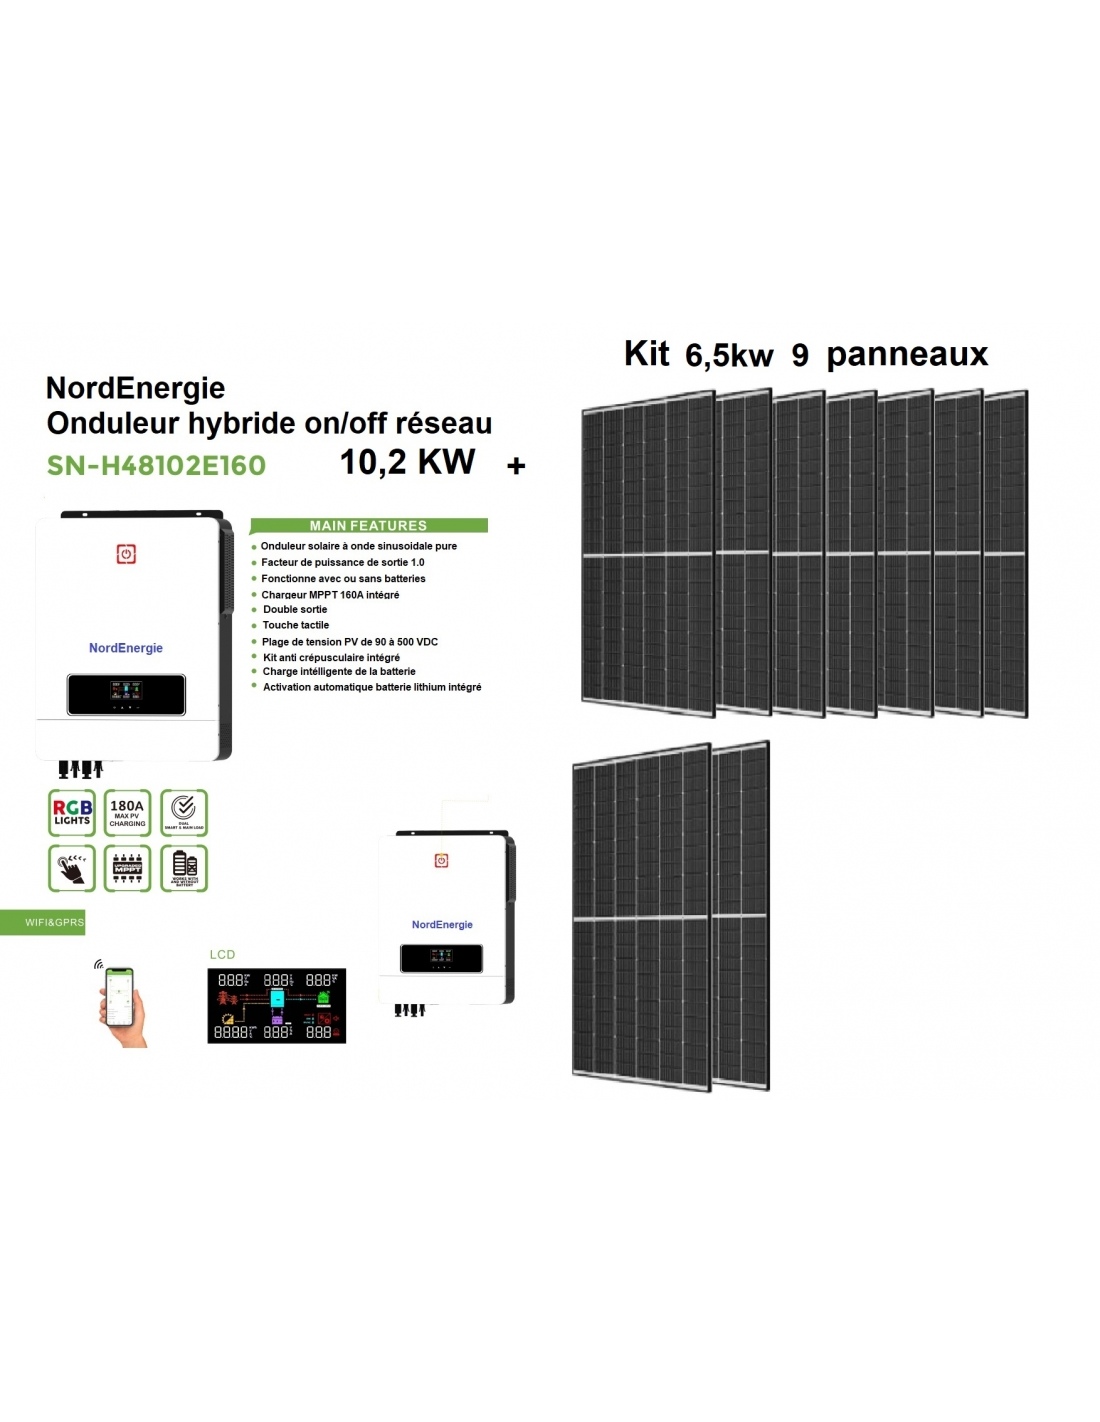 Kit NordEnergie KW Bi power 6,5kw extensible haut rendement 23,18 %